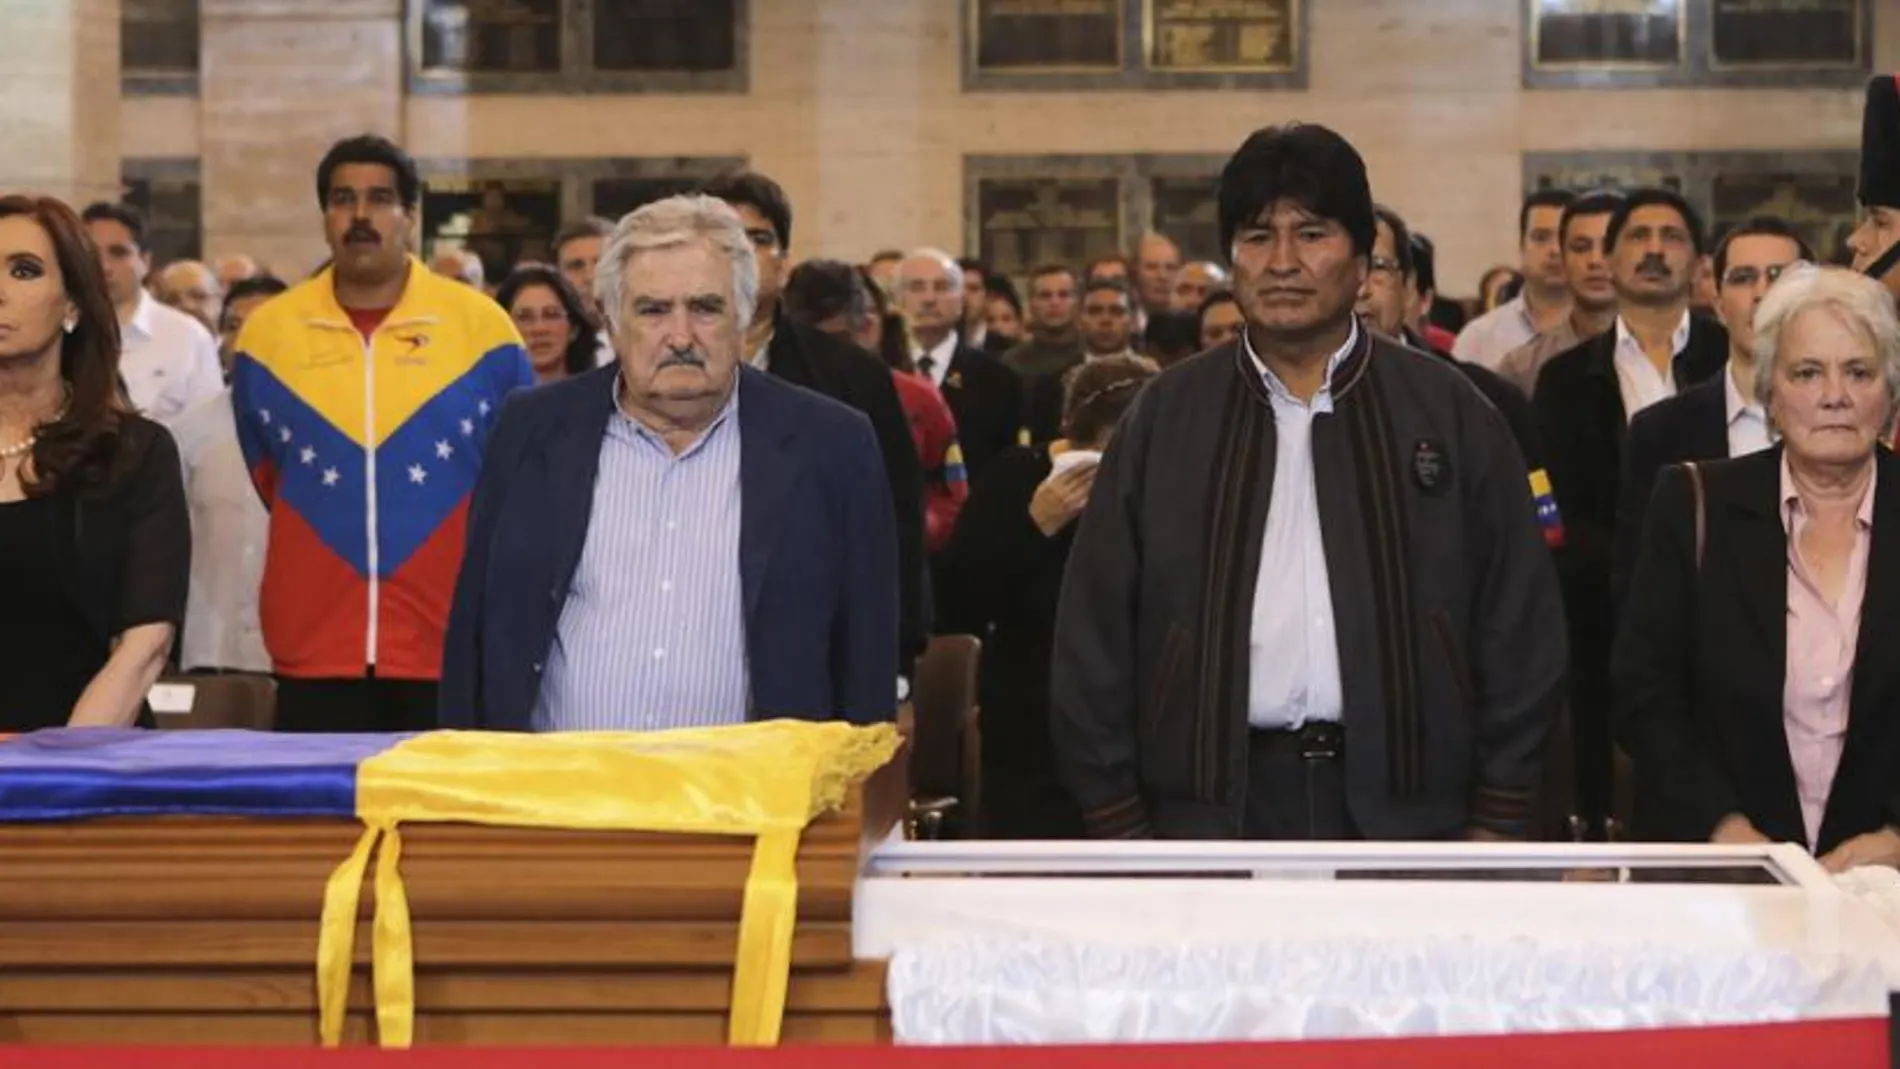 Cristina Fernandez, Jose Mujica y Evo Morales ante el féretro de Chávez